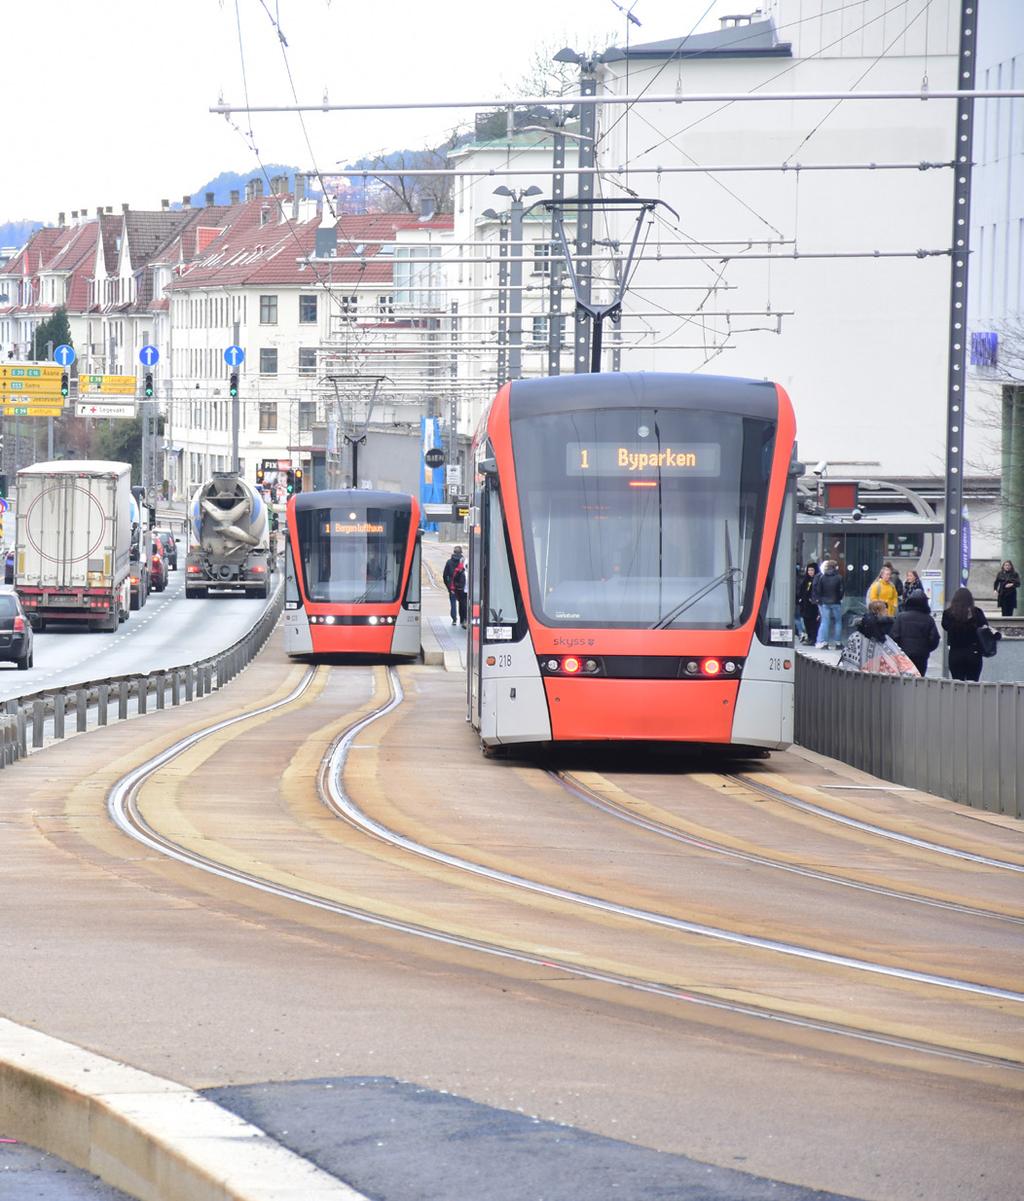 Bergen skal være fossilfri i 2030. Det vil gjøre byen bedre å bo i, mener bergenserne.